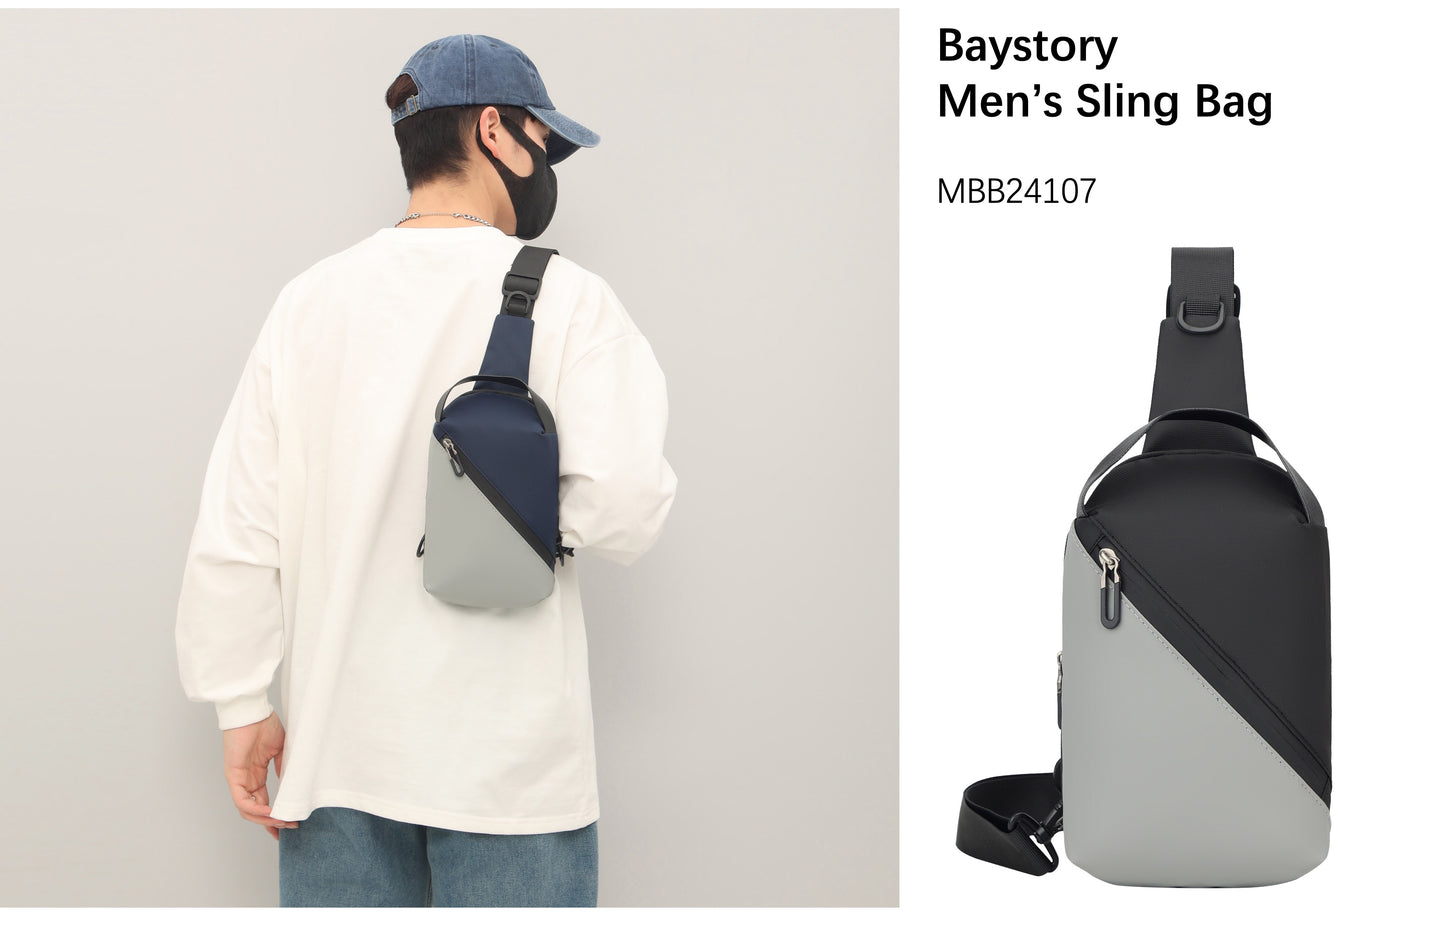 Baystory Men's Sling bag MBB24107 - Baystory